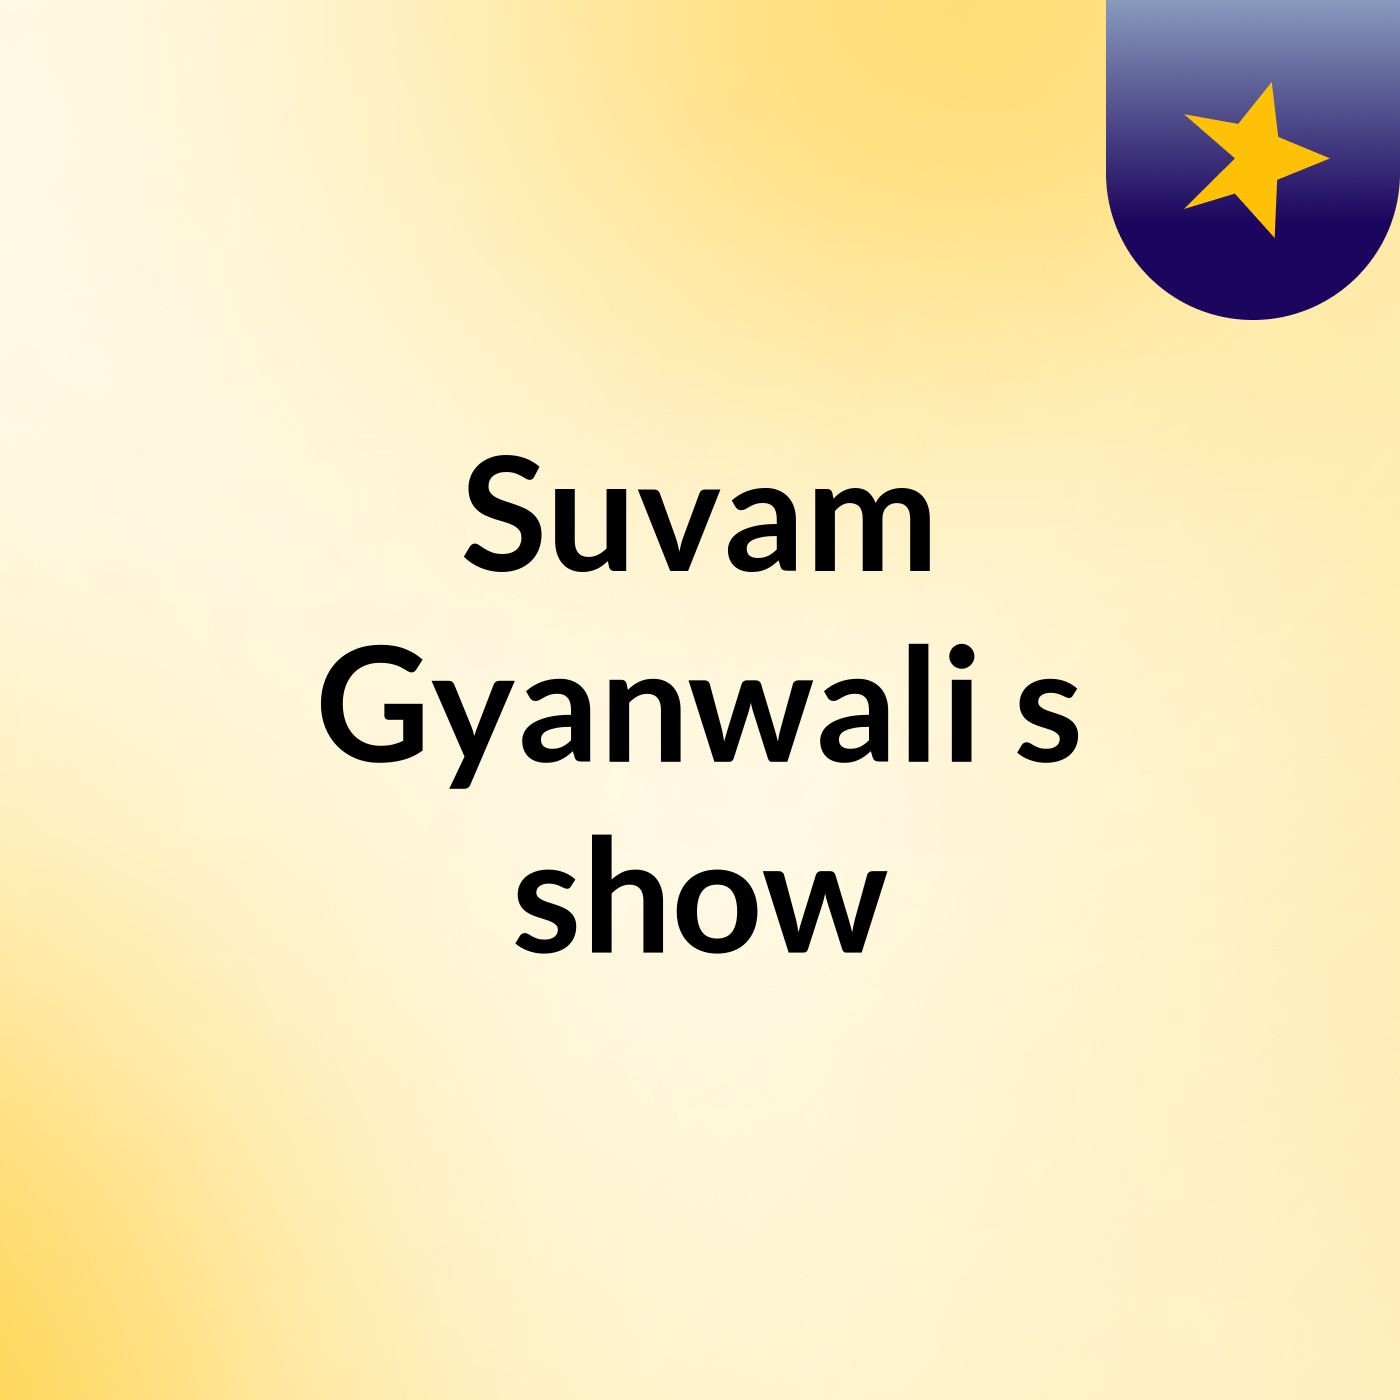 Suvam Gyanwali's show